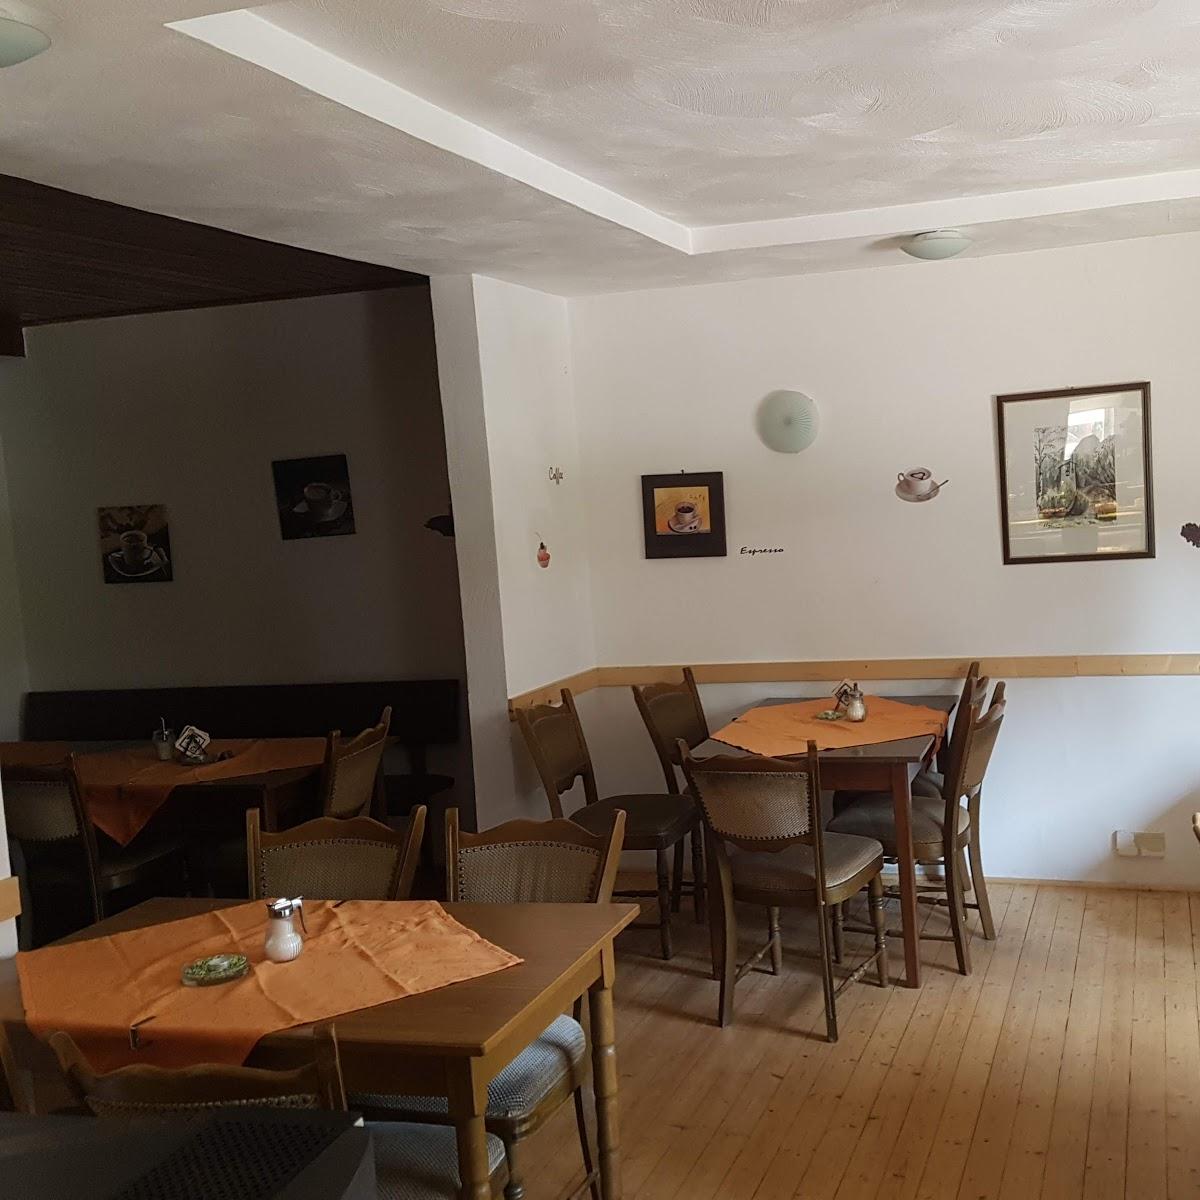 Restaurant "Cafe Nicklis" in Trippstadt